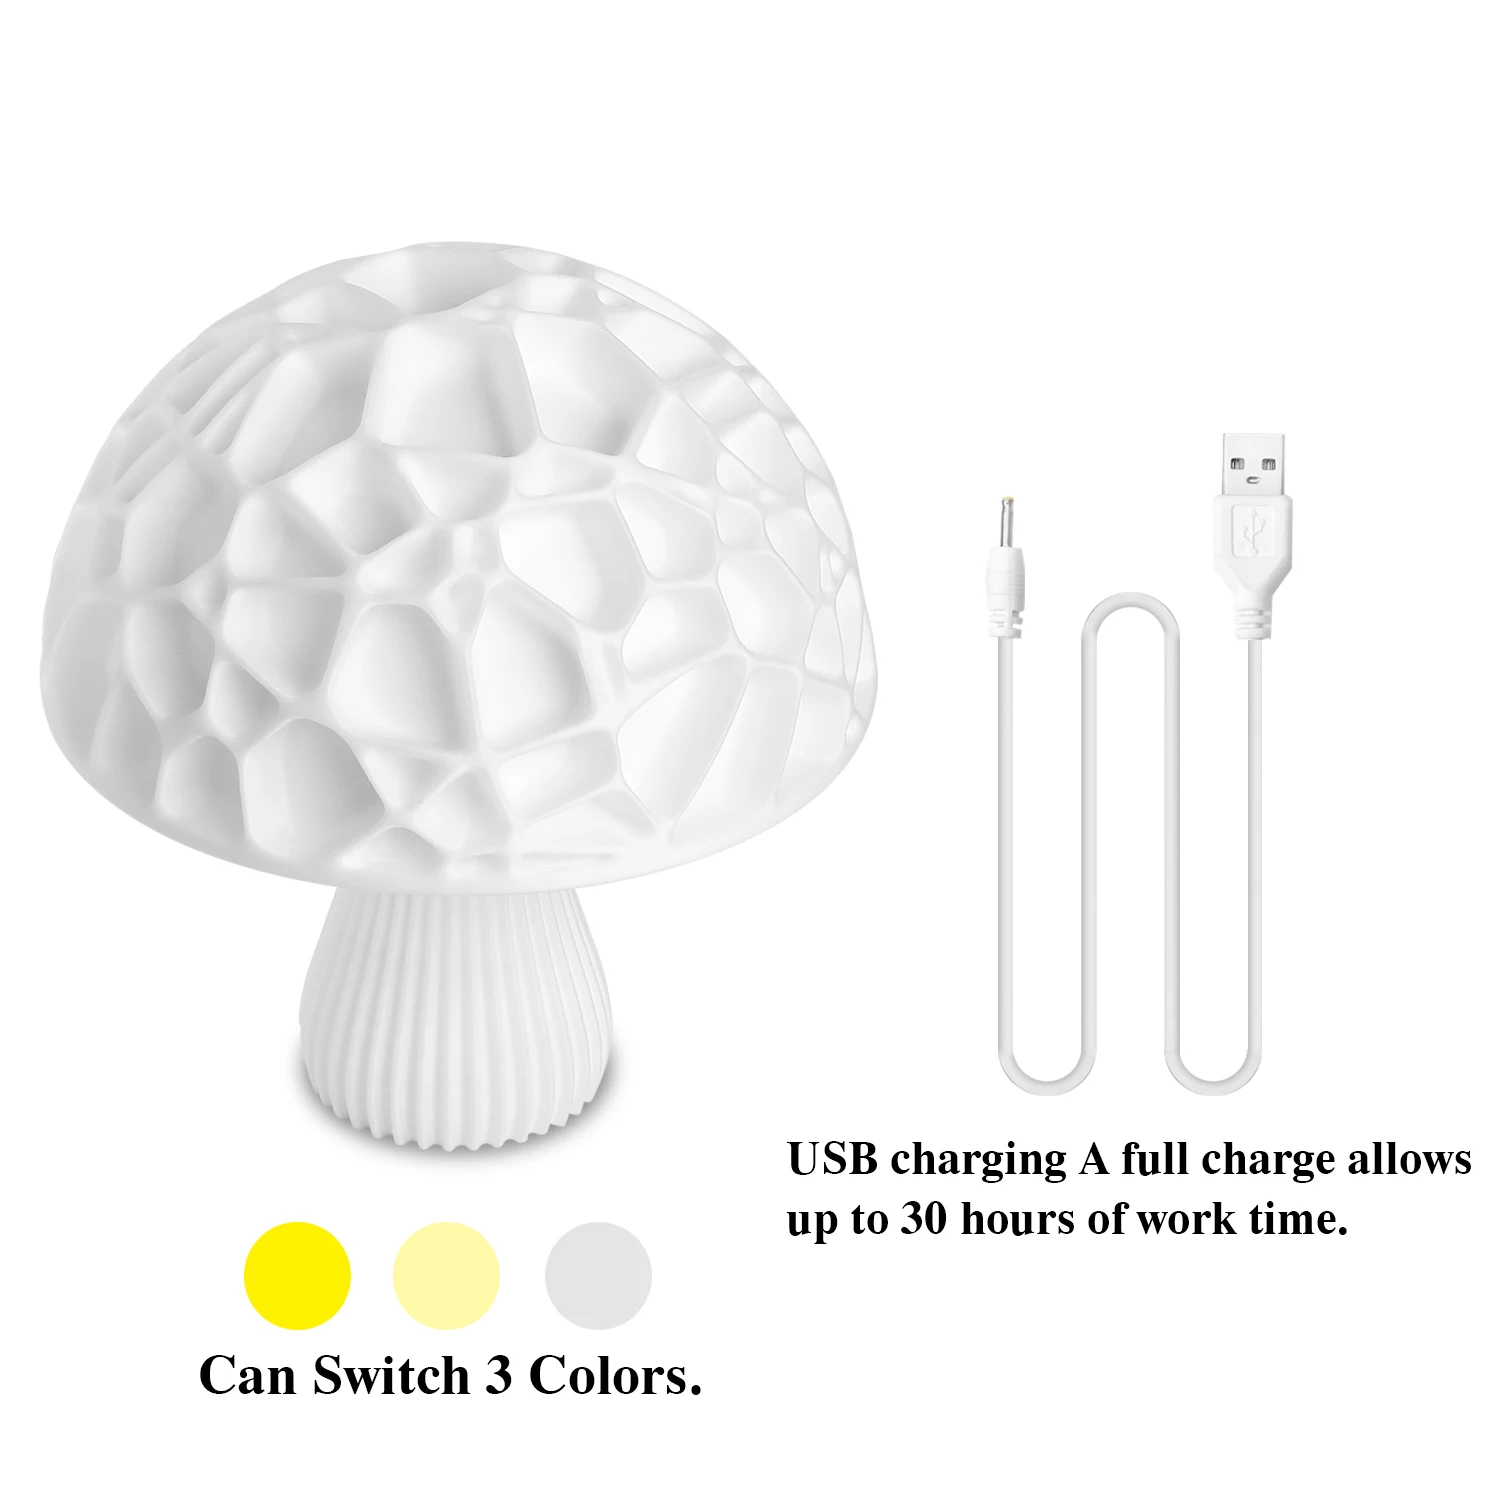 Ночной светильник светодиодный Гриб лампа беспроводной пульт дистанционного управления 6 цветов для детской спальни USB гаджеты